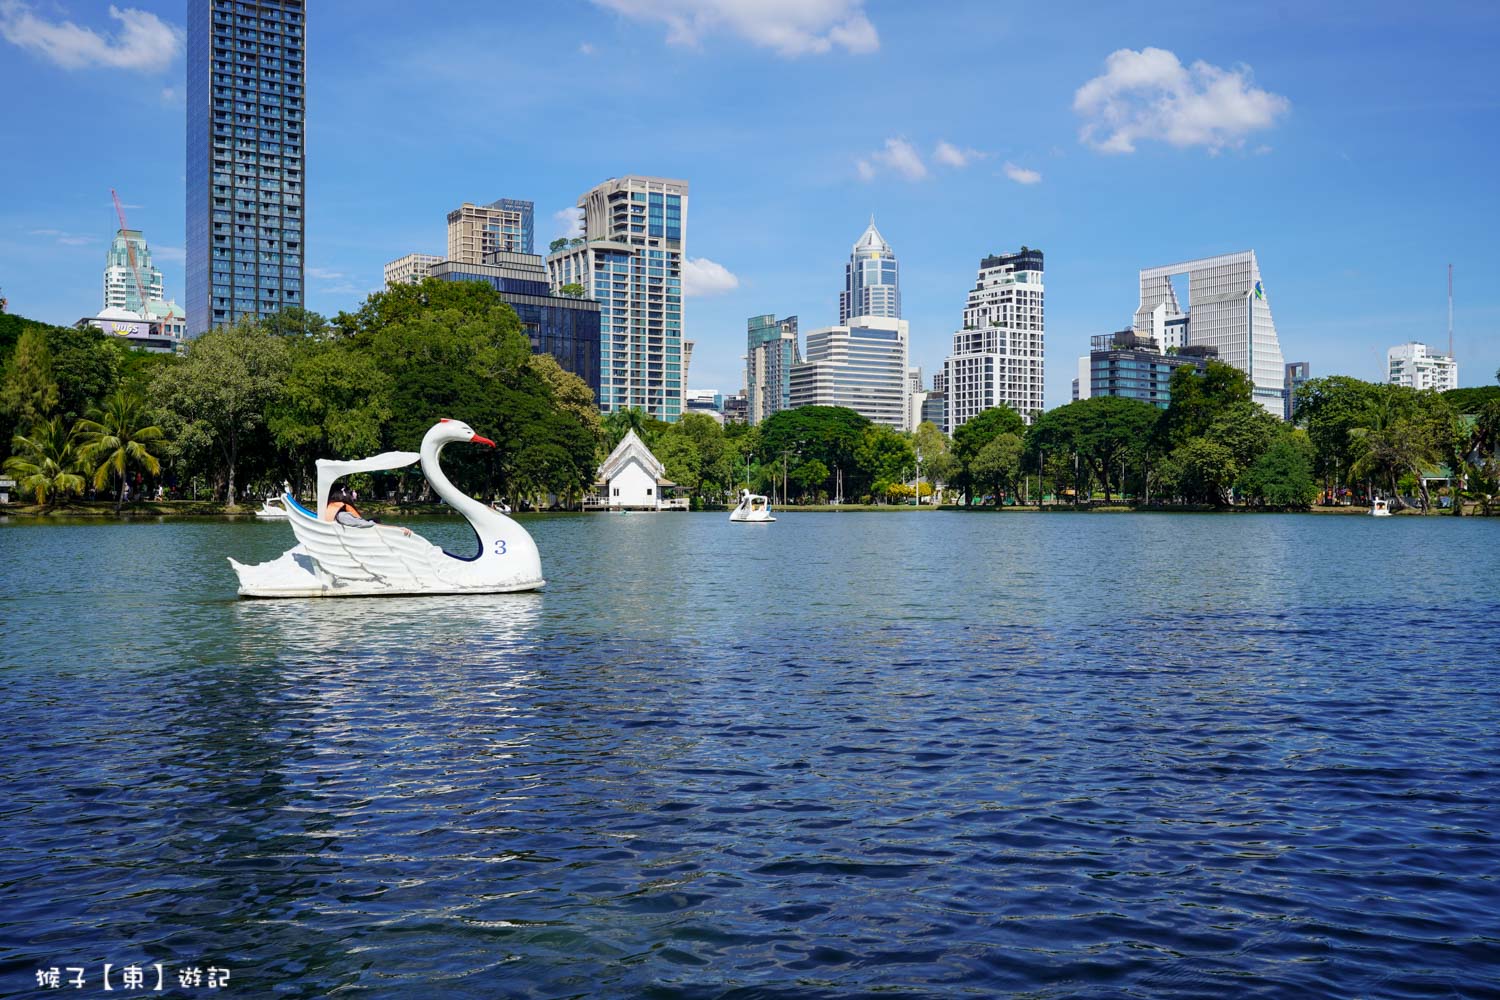 延伸閱讀：[泰國] 曼谷免費景點 Lumphini Park倫批尼公園免費玩天鵝船遊湖 漫步湖畔步道 泰國曼谷免費親子景點